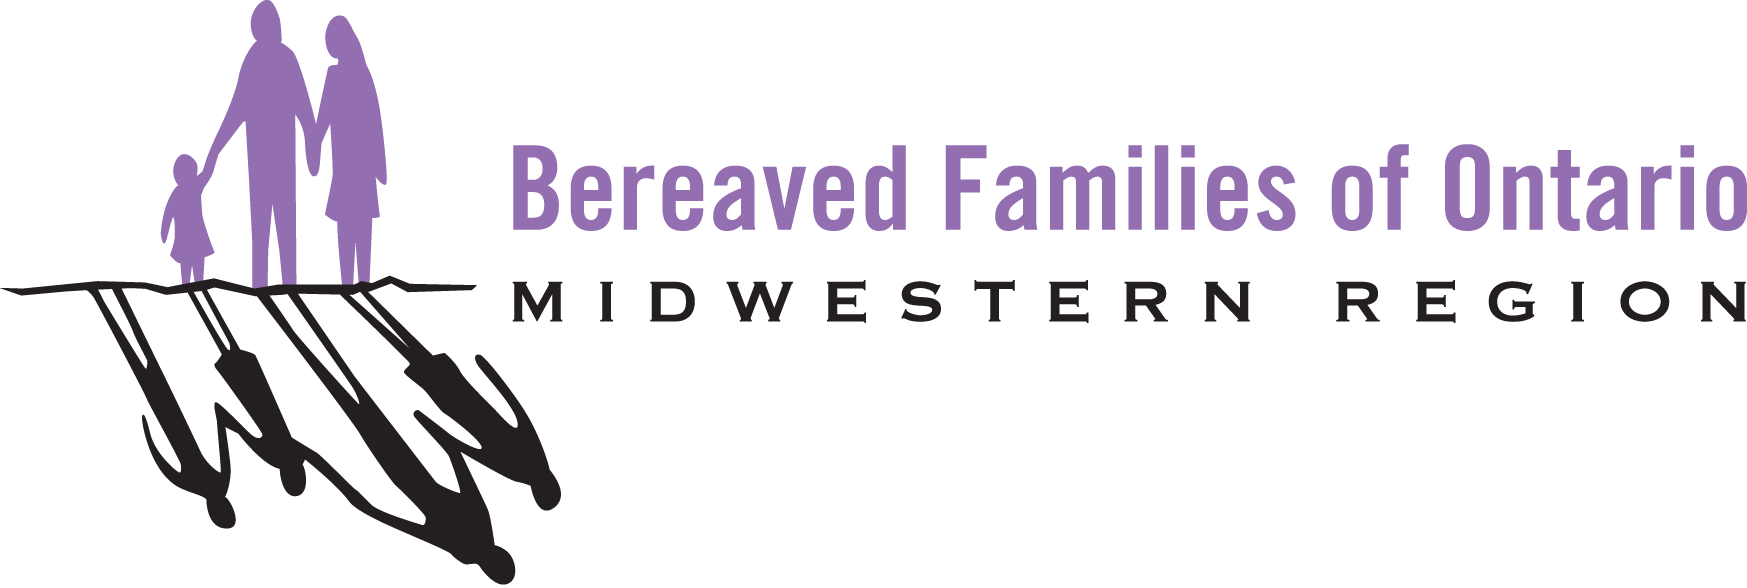 Bereaved Families of Ontario, Midwestern Region